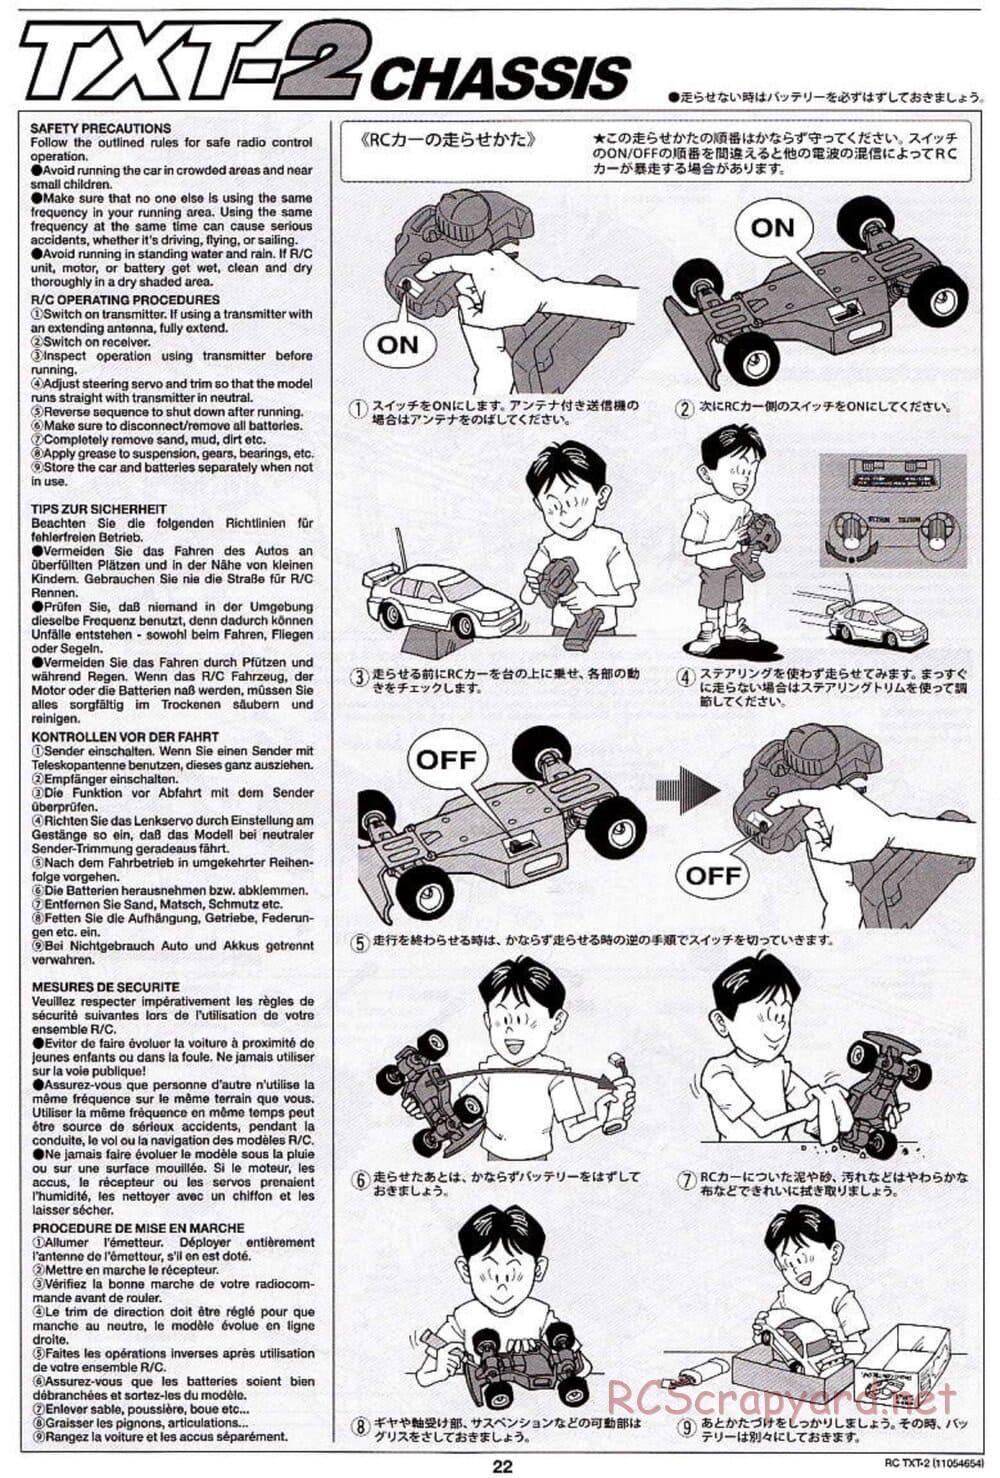 Tamiya - TXT-2 Chassis - Manual - Page 22